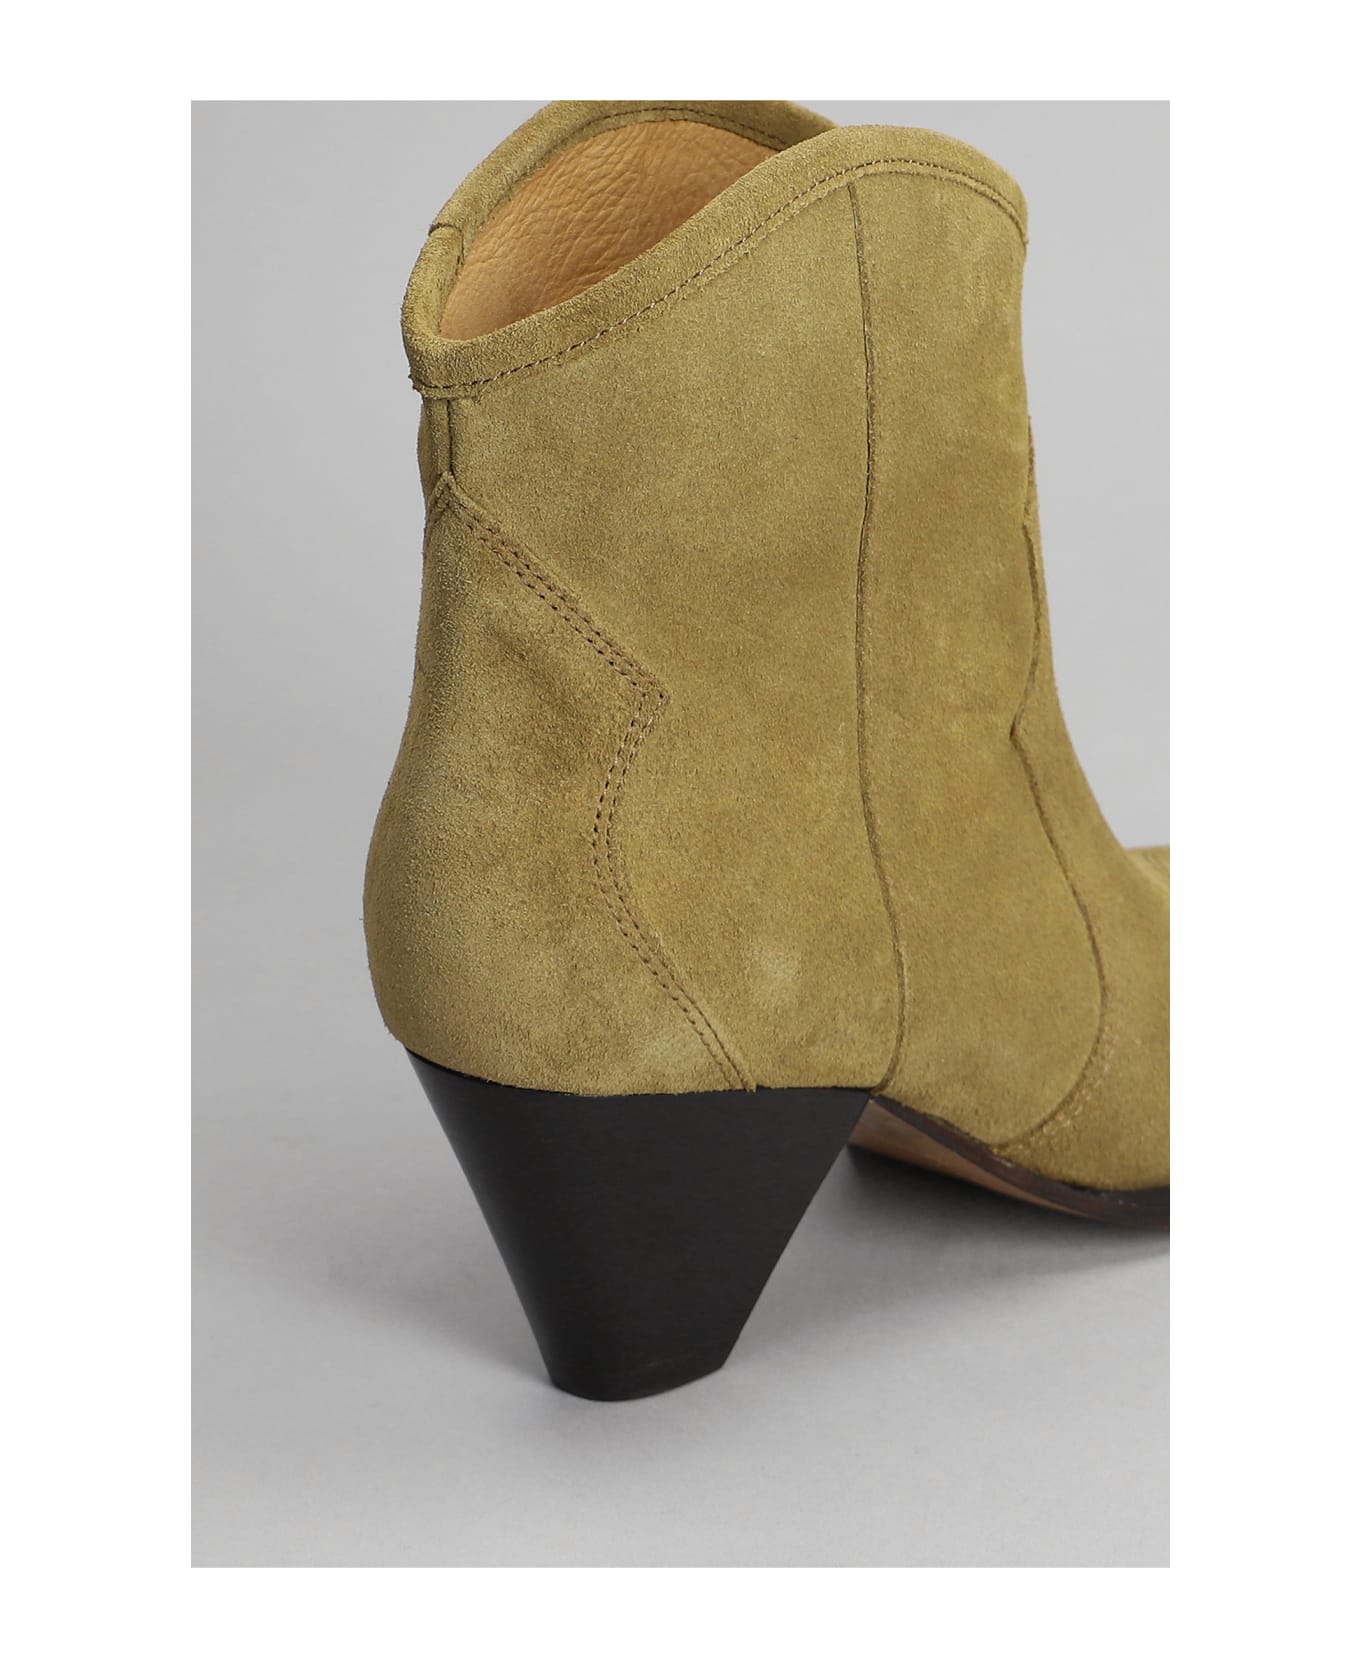 Isabel Marant Darizio Almond-toe Boots - Dove Grey ブーツ